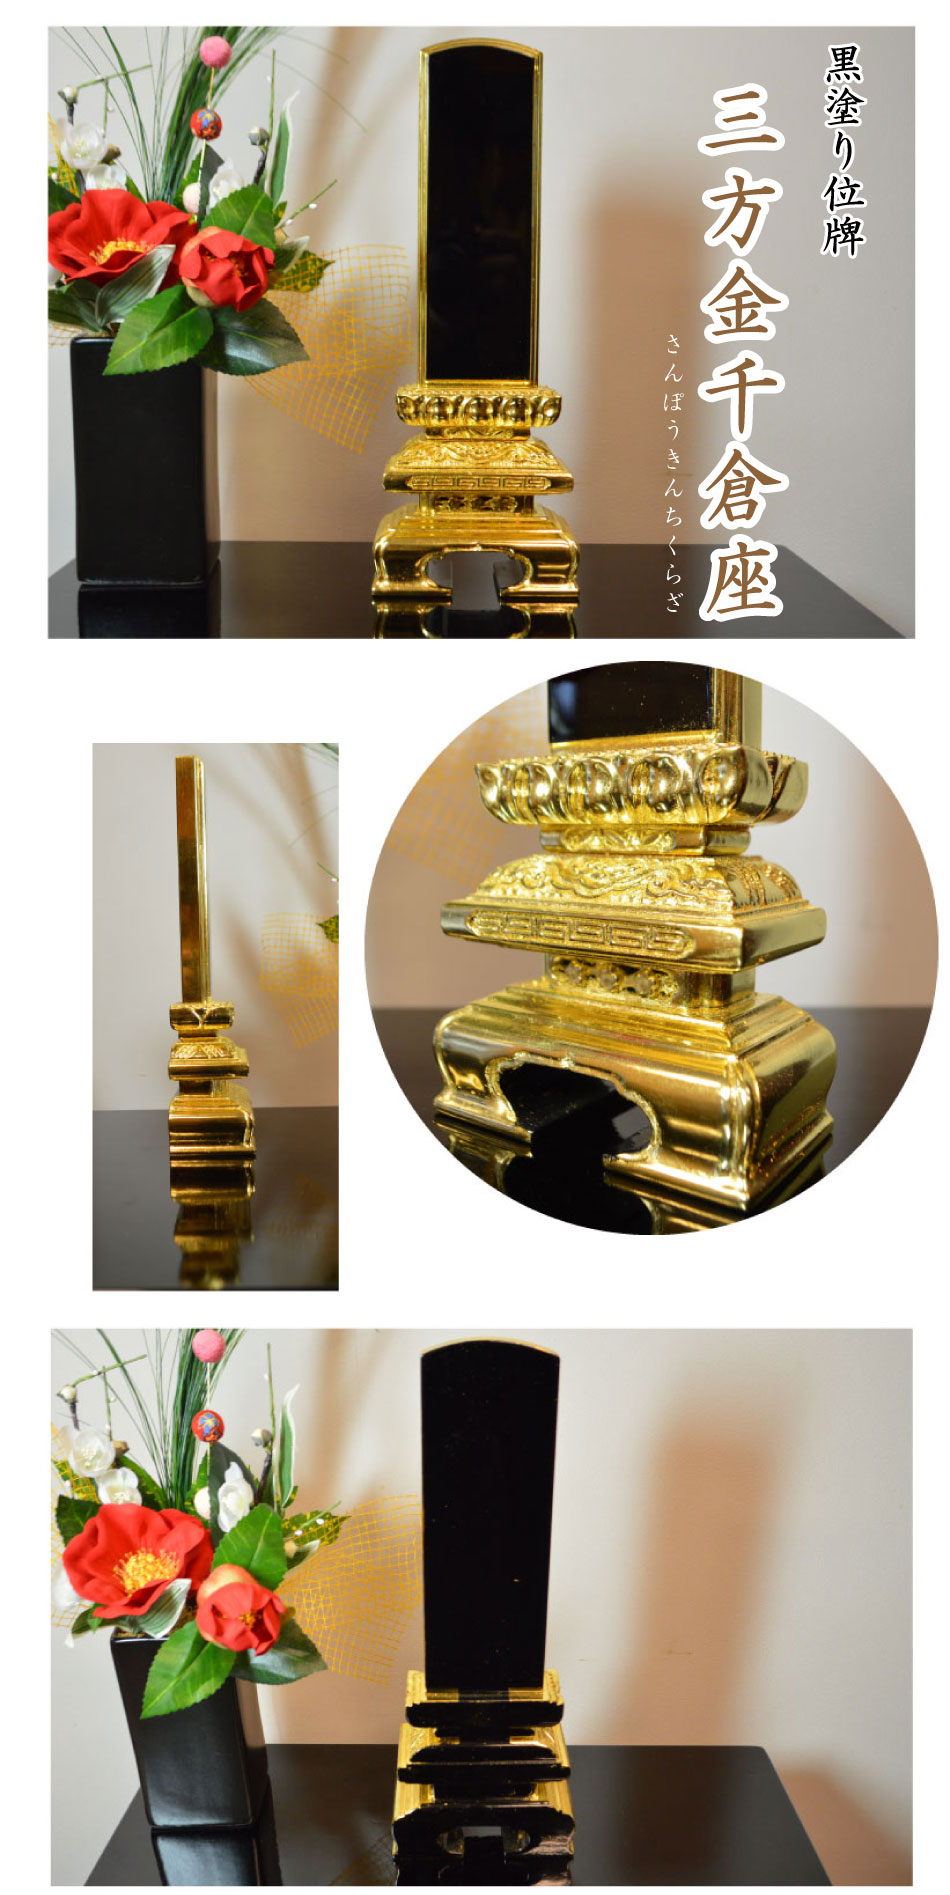 黒塗り位牌「三方金千倉座」の詳細画像です。京中台のお位牌に比べ台座の彫刻が豪華なお位牌になります。